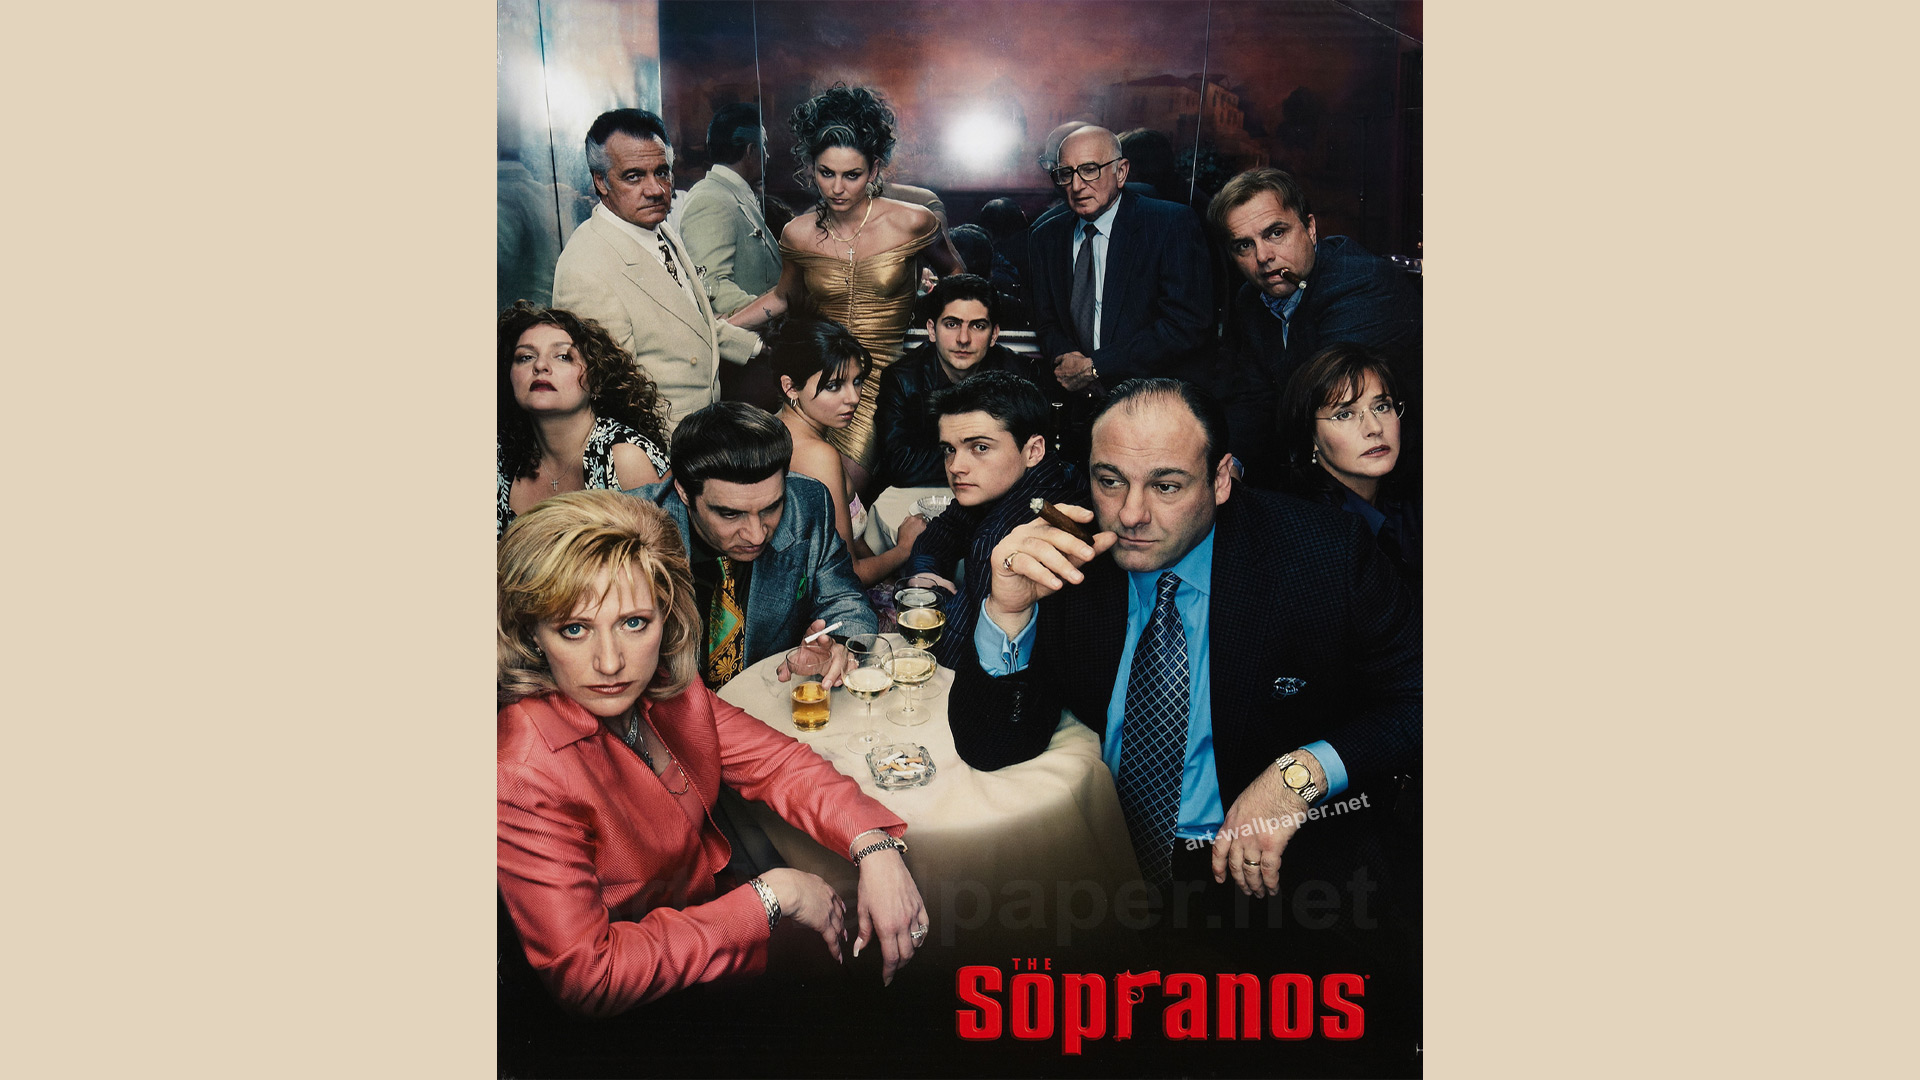 Sopranos Photos Image Ravepad The Place To